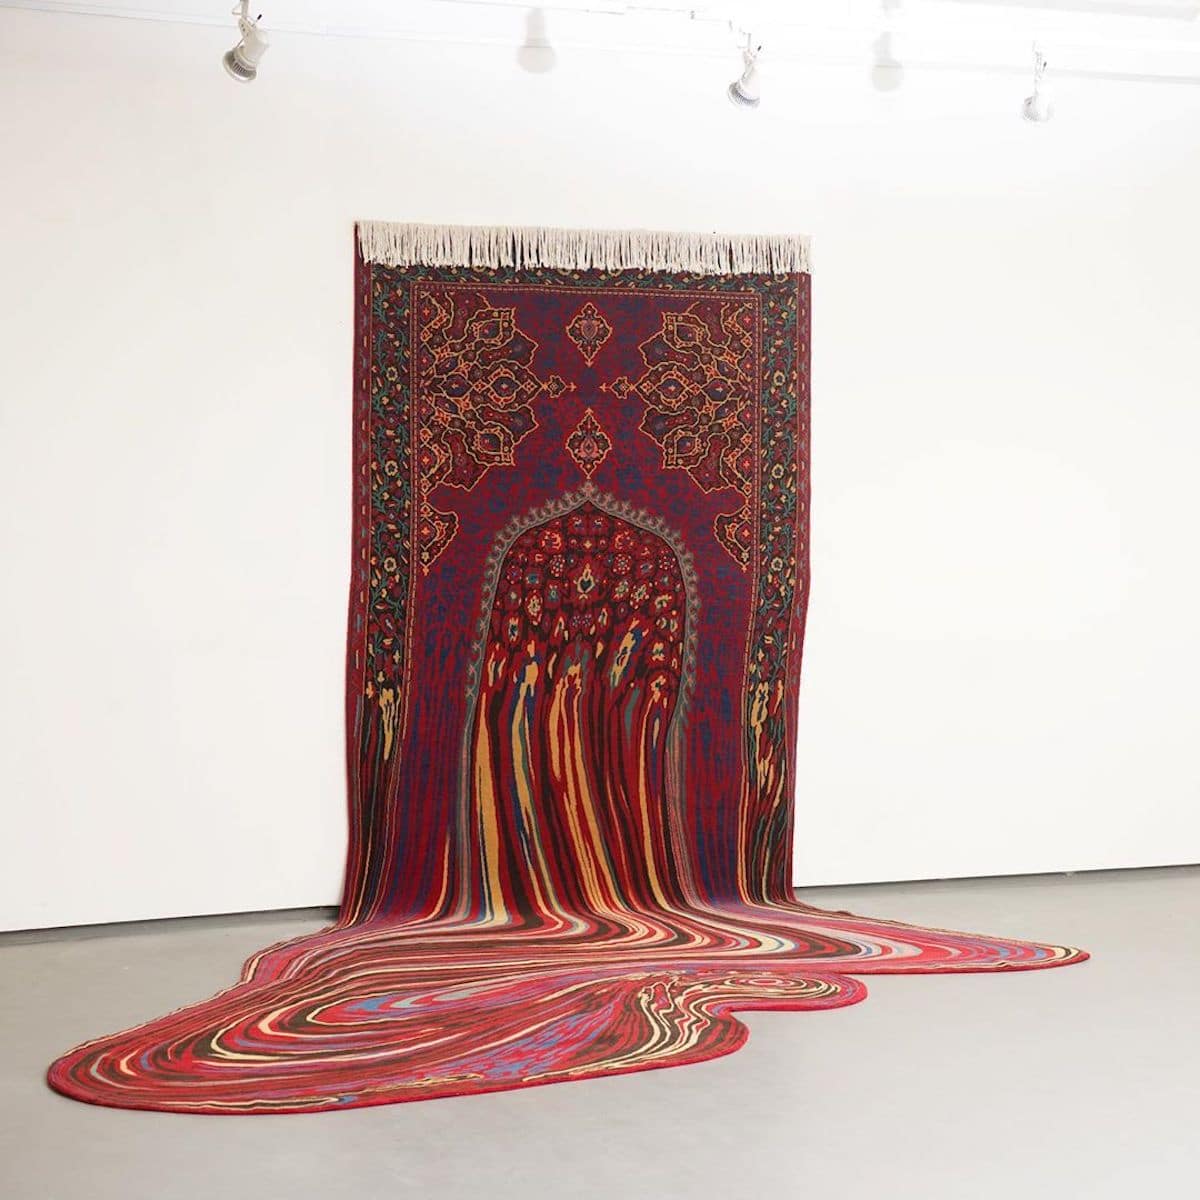 Carpets by Faig Ahmed